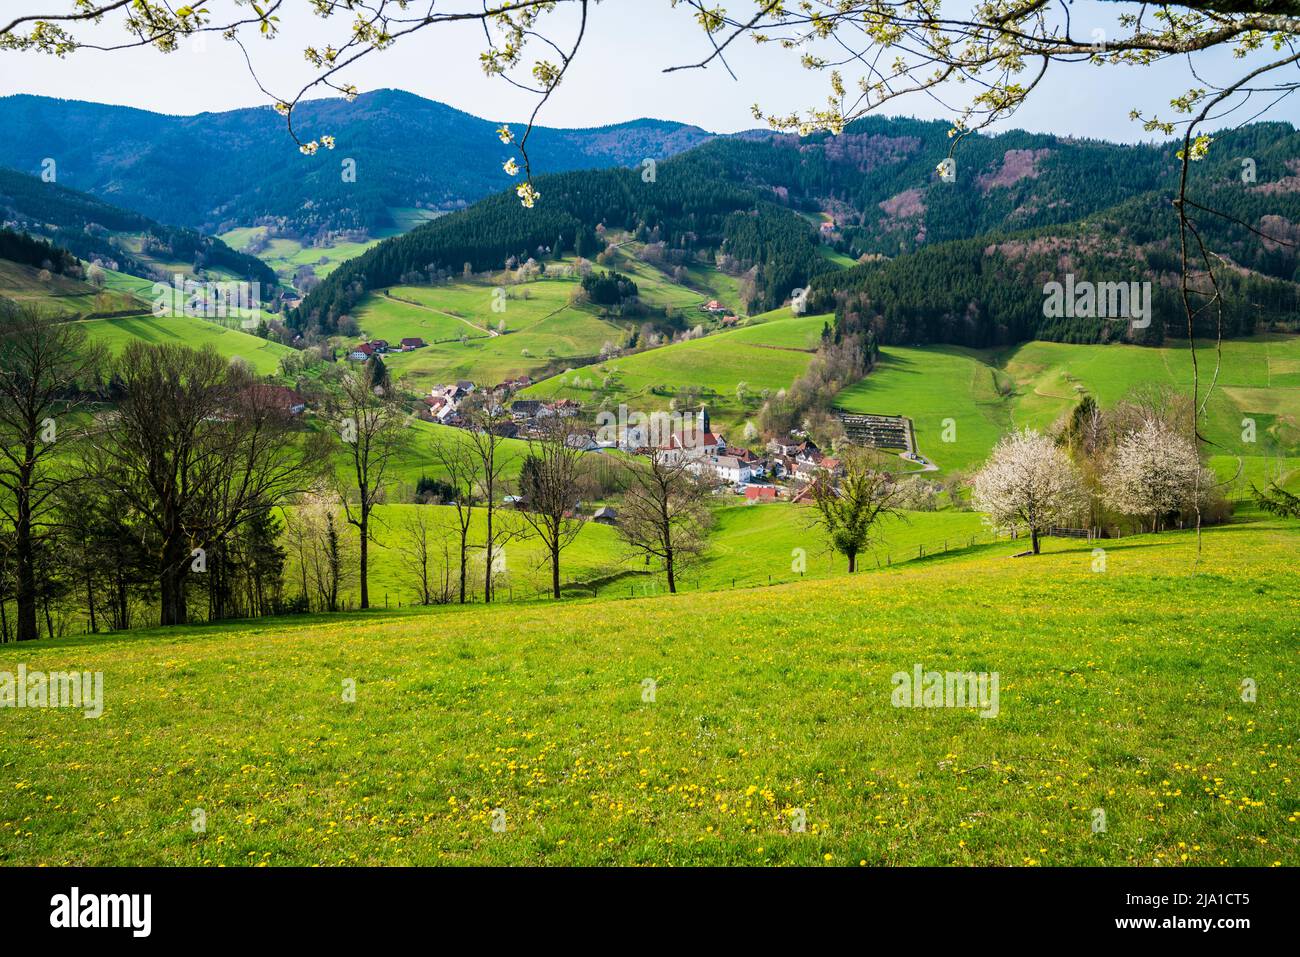 Alemania, vista rural del pueblo del bosque negro de la iglesia y las casas en el interior verde naturaleza paisaje paraíso Foto de stock